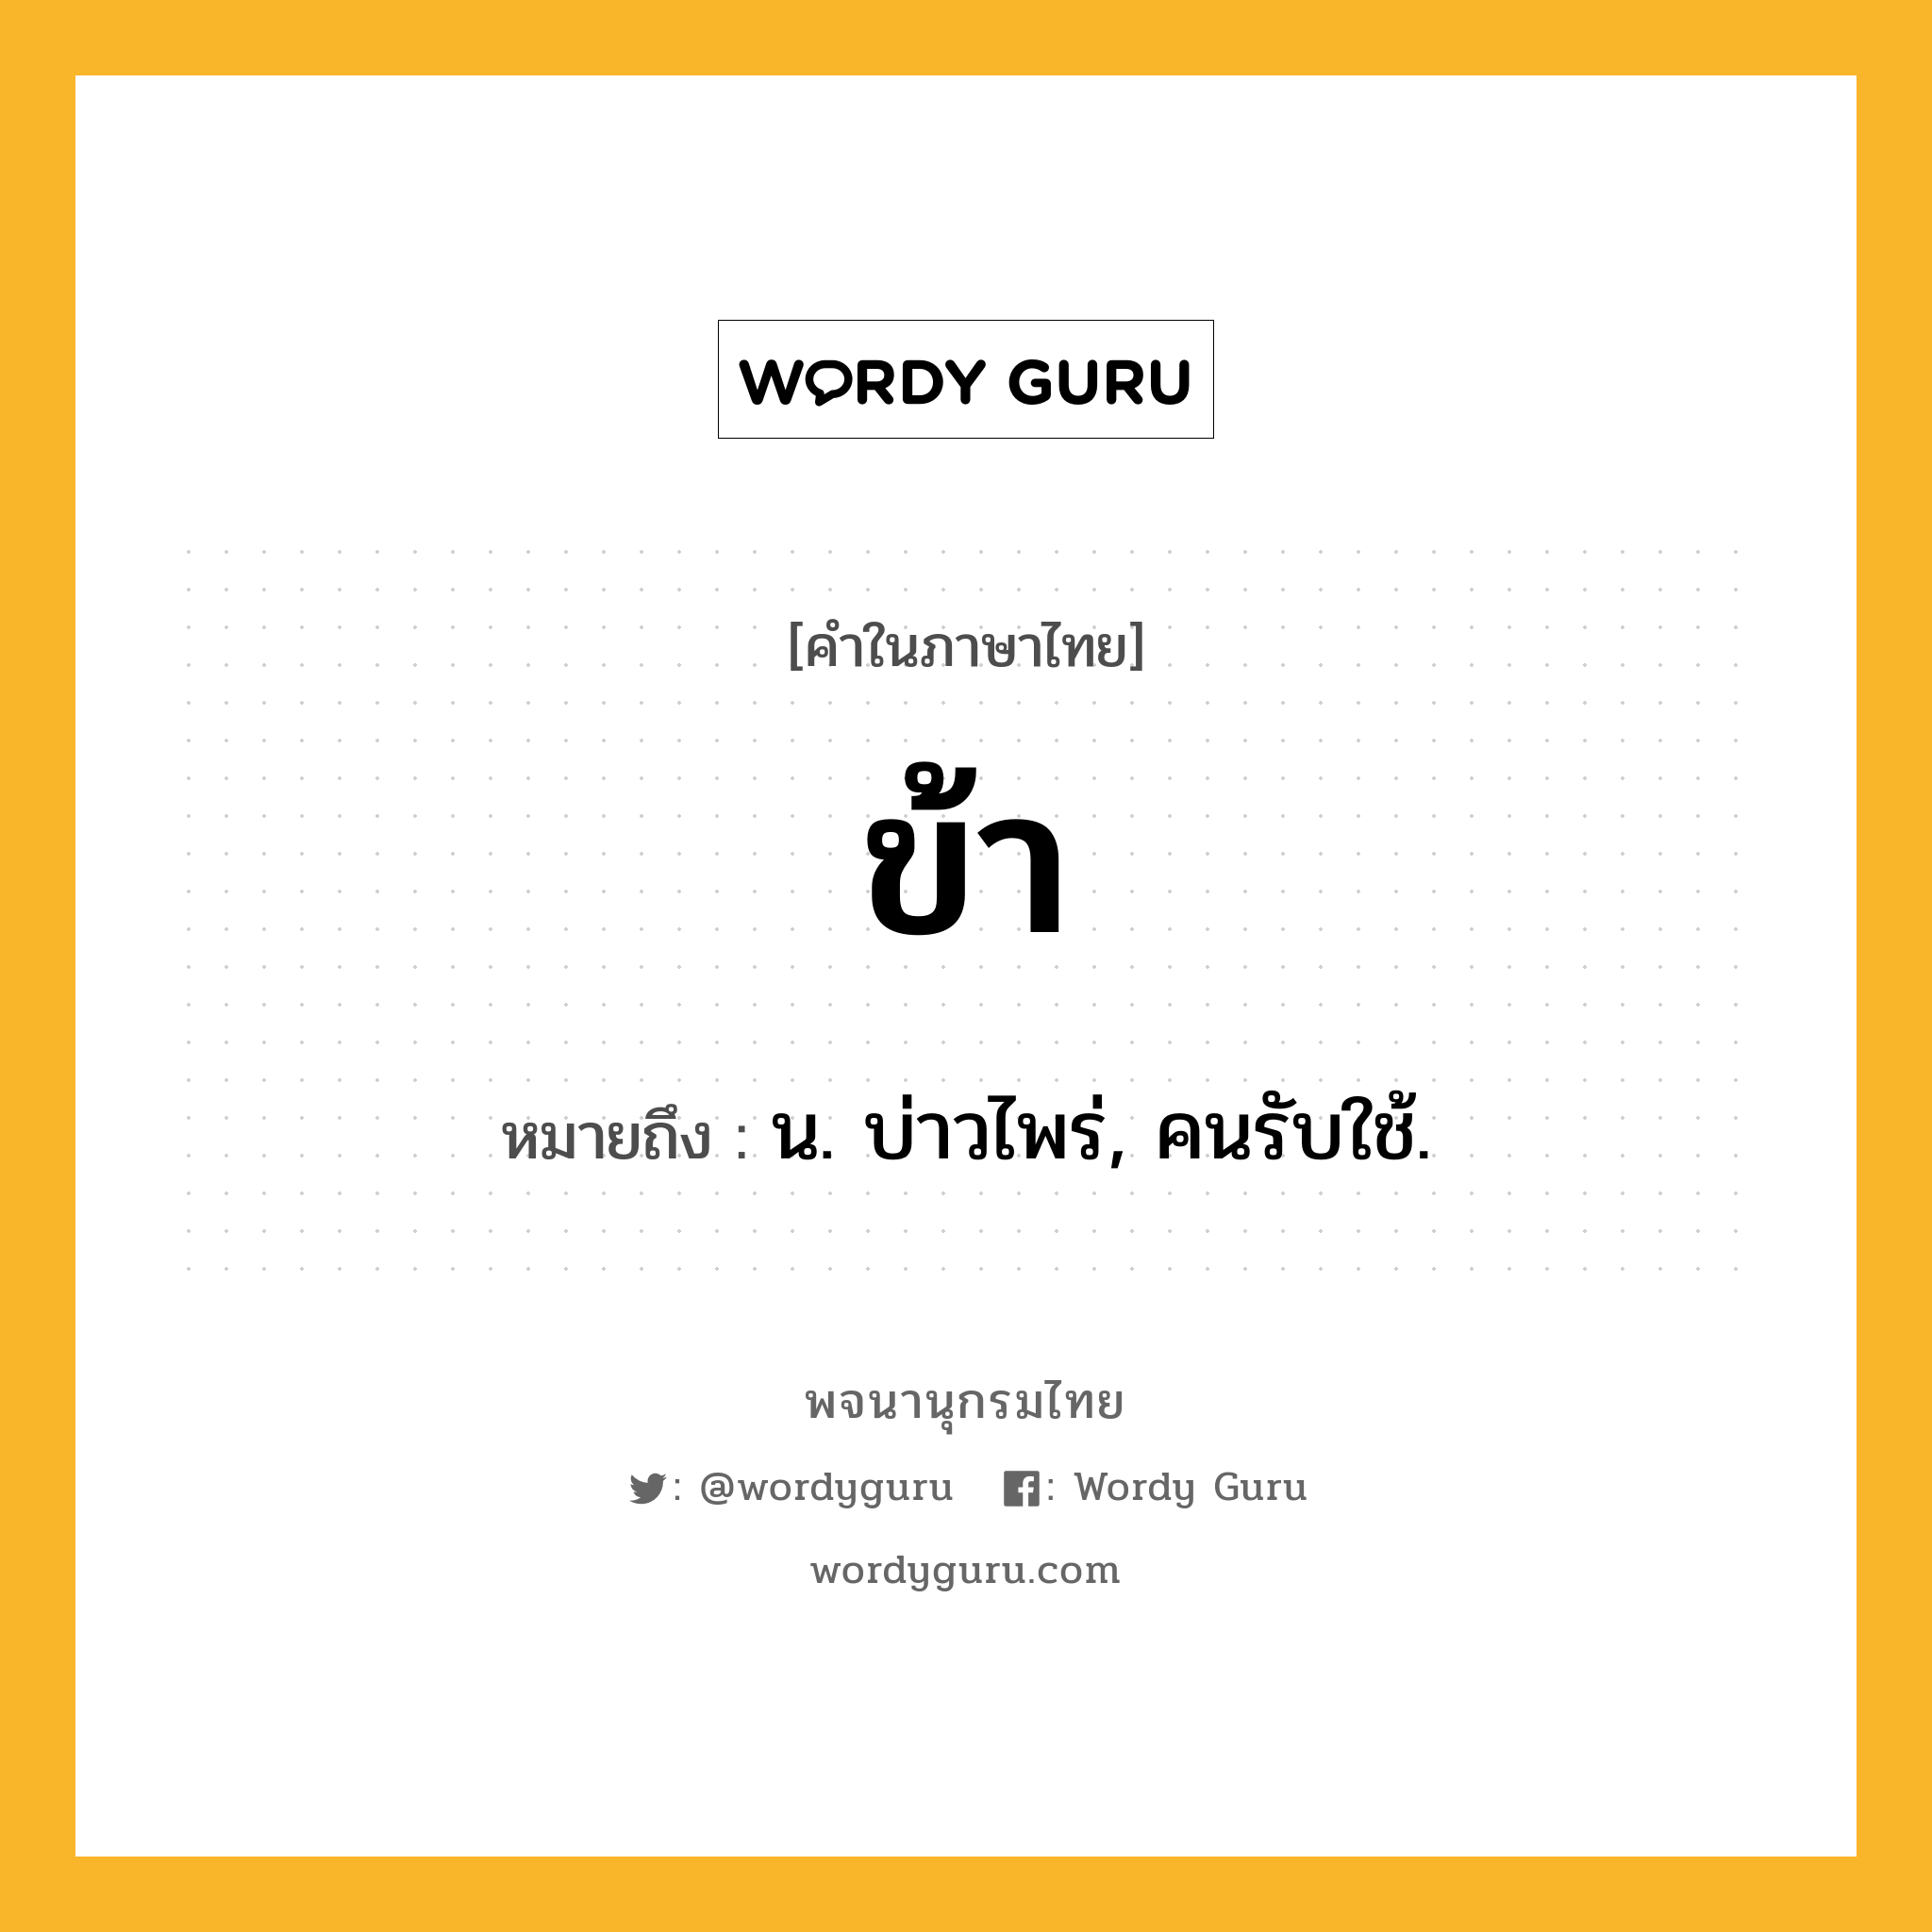 ข้า ความหมาย หมายถึงอะไร?, คำในภาษาไทย ข้า หมายถึง น. บ่าวไพร่, คนรับใช้.